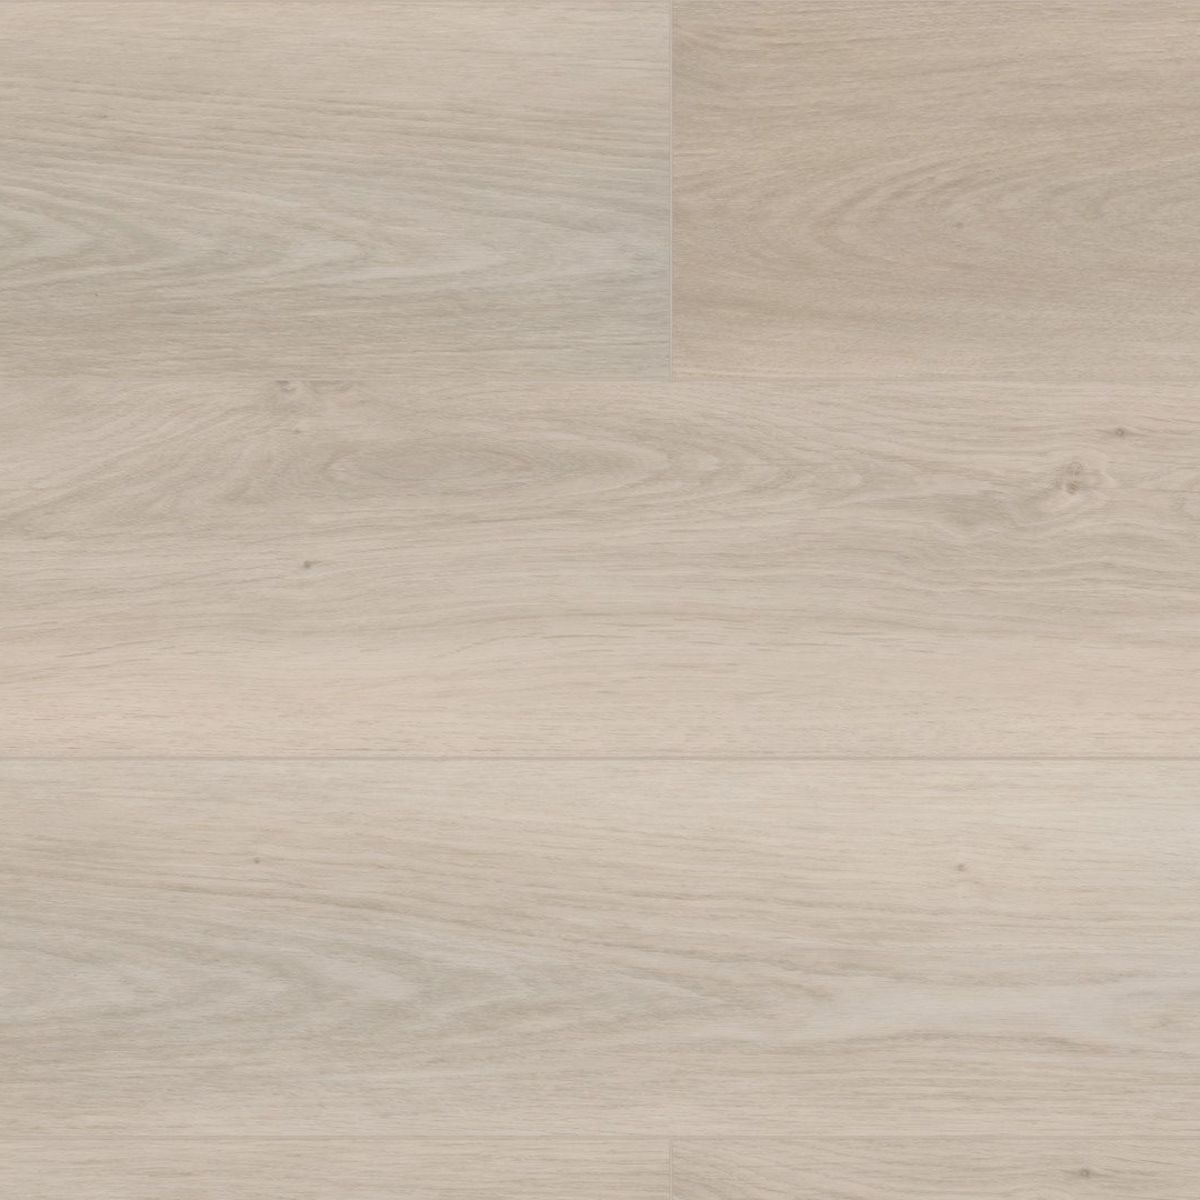 Cambridge White Easy Luxury Rigid Core Vinyl Plank Flooring- Embossed